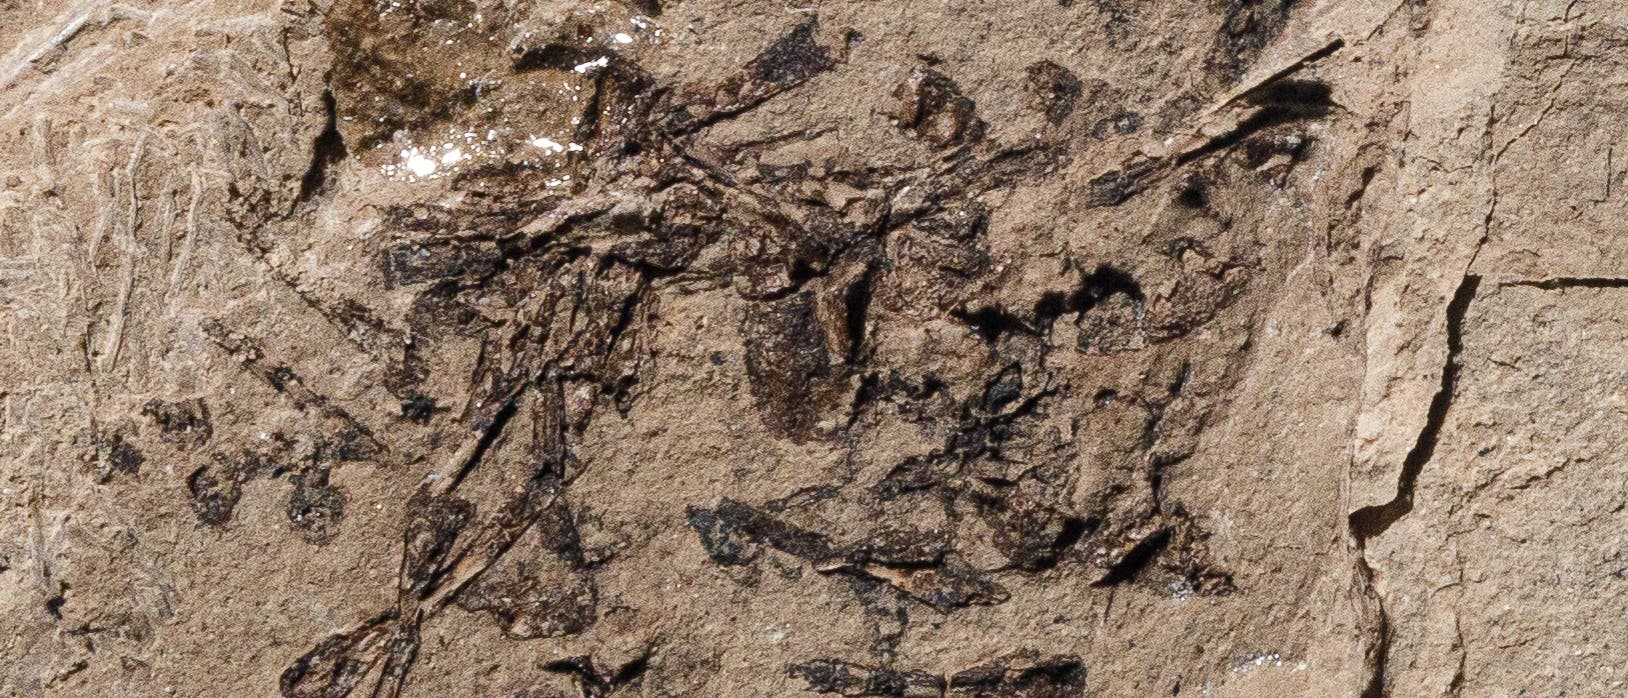 Fossiler Speisebrei aus der Morrison-Formation in Utah. Alter: 150 Millionen Jahre.